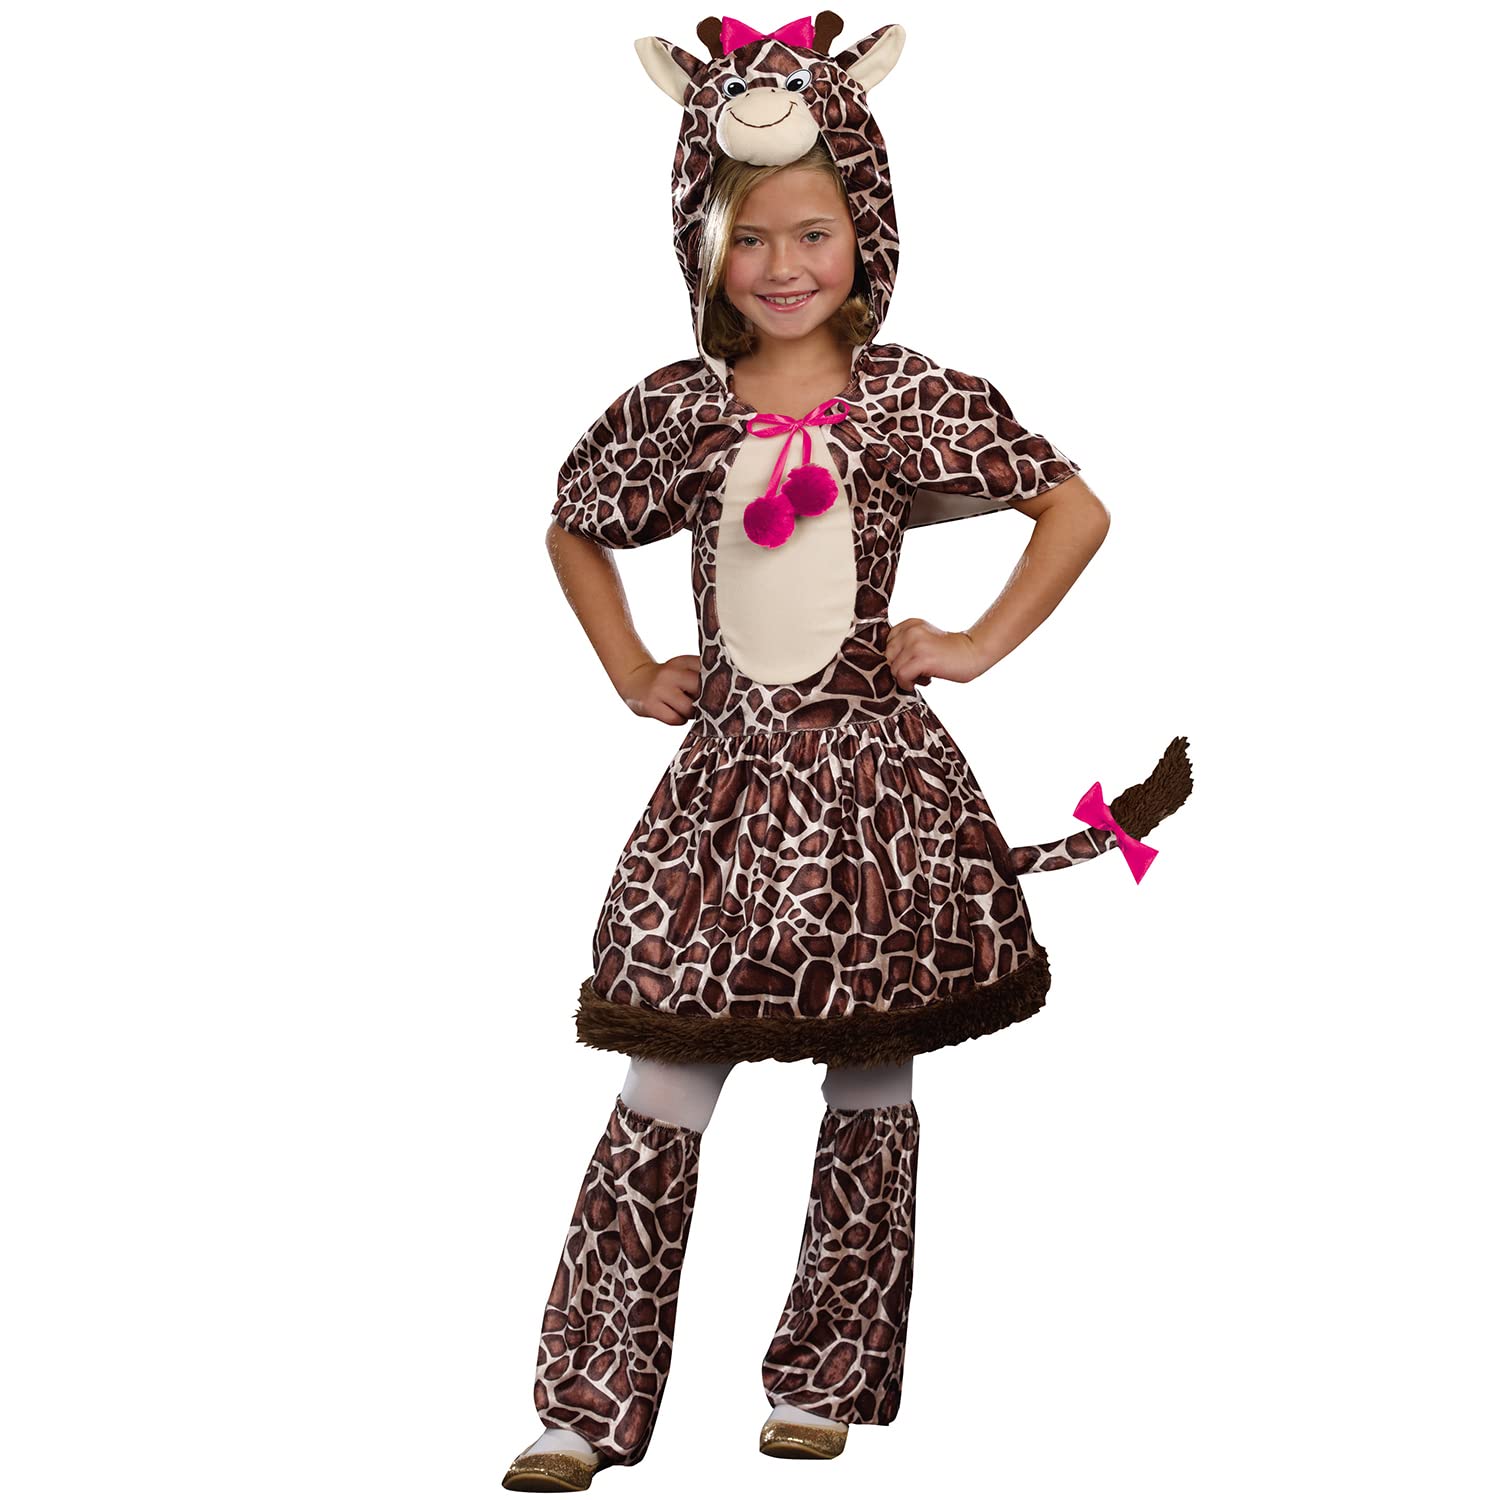 Krause & Sohn Giraffen Kostüm Sarabi Kleid für Kinder 6-12 Jahre Tier braun Fasching Karneval Tierkostüm (6-8 Jahre)